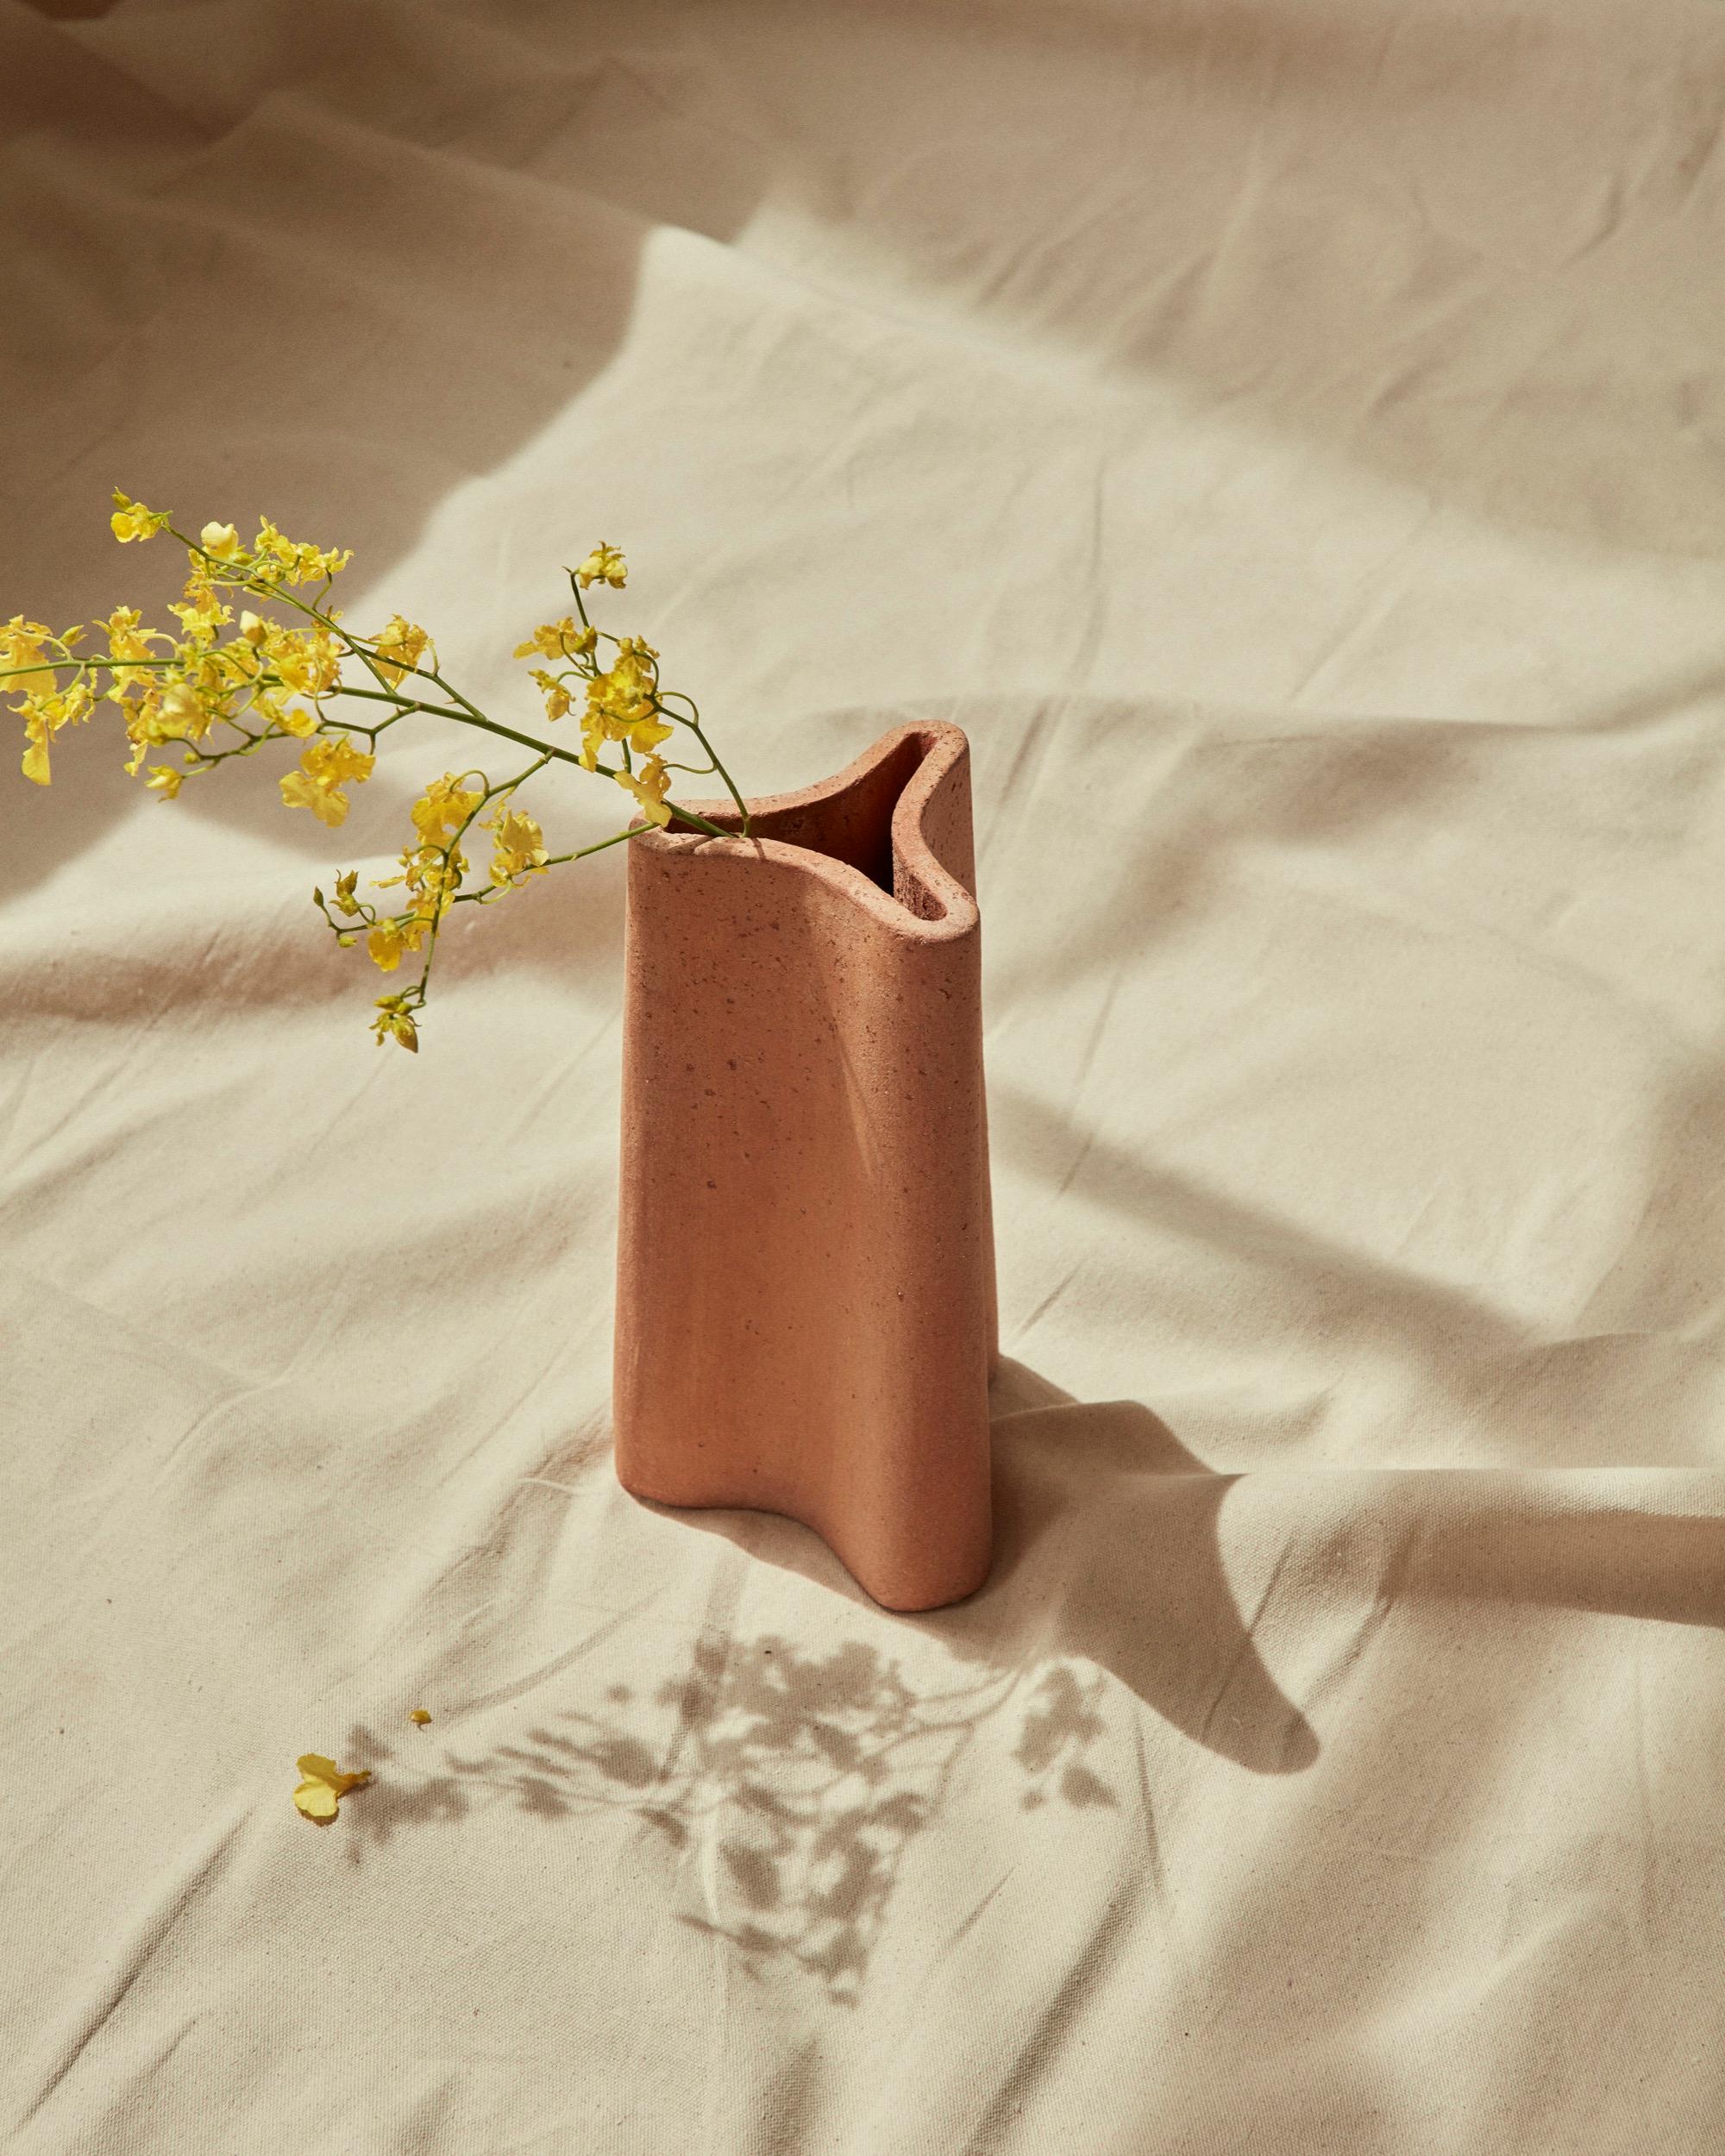 Un vase fluide, inspiré par les jarres à huile et à eau nervurées de Grèce. La forme en trois parties, semblable à un compartiment, est effilée pour la stabilité et nervurée pour la résistance.

La gamme comprend une version plus grande du